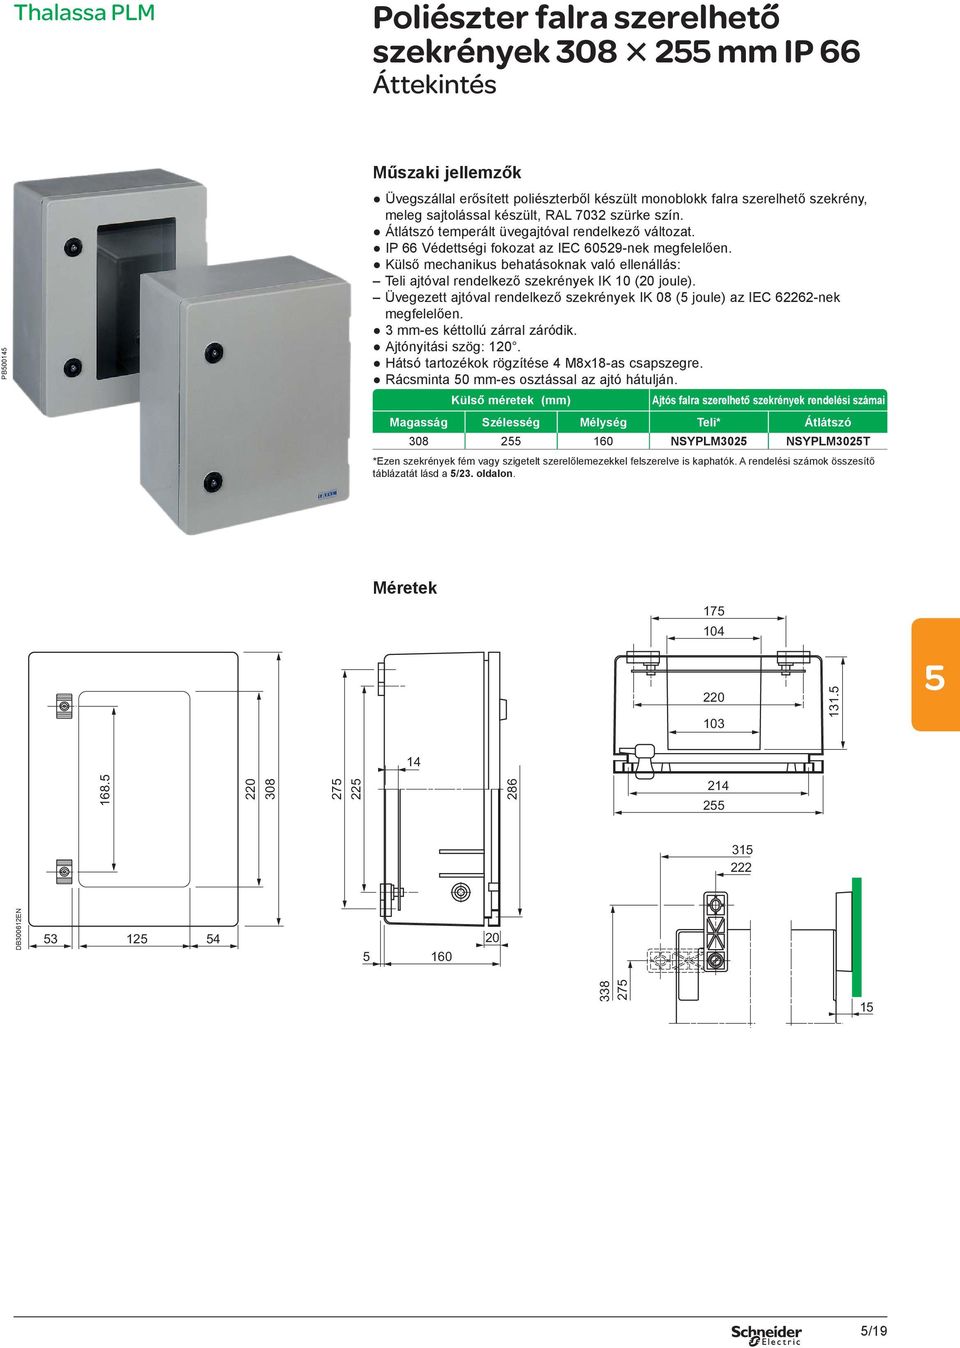 Külső mechanikus behatásoknak való ellenállás: Teli ajtóval rendelkező szekrények IK 10 (20 joule). Üvegezett ajtóval rendelkező szekrények IK 08 ( joule) az IEC 62262-nek megfelelően.